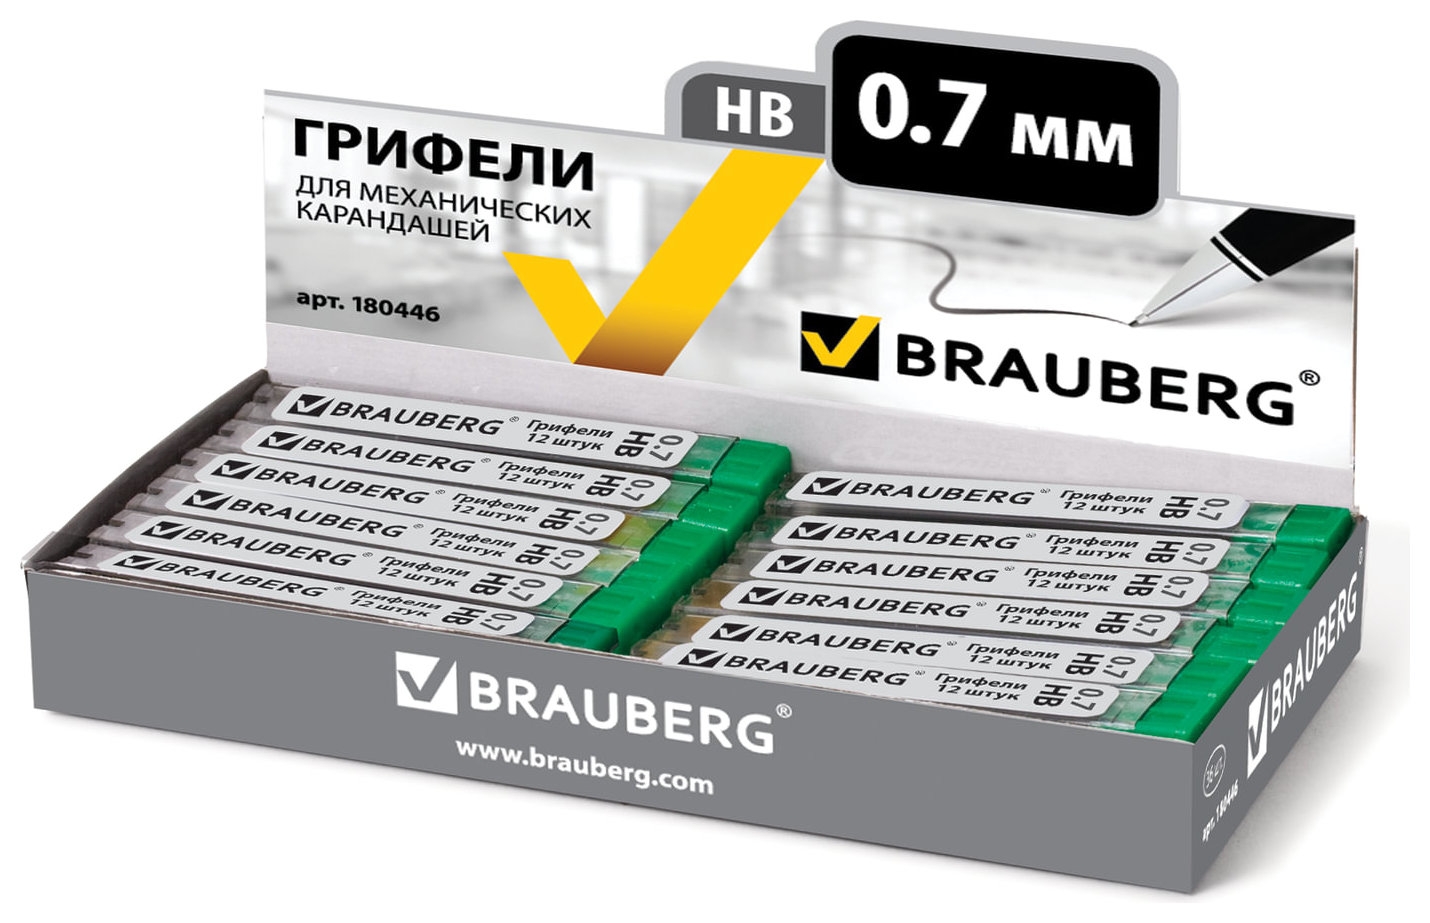 Грифели запасные Brauberg, комплект 12 шт., Hi-polymer, HB, 0,7 мм